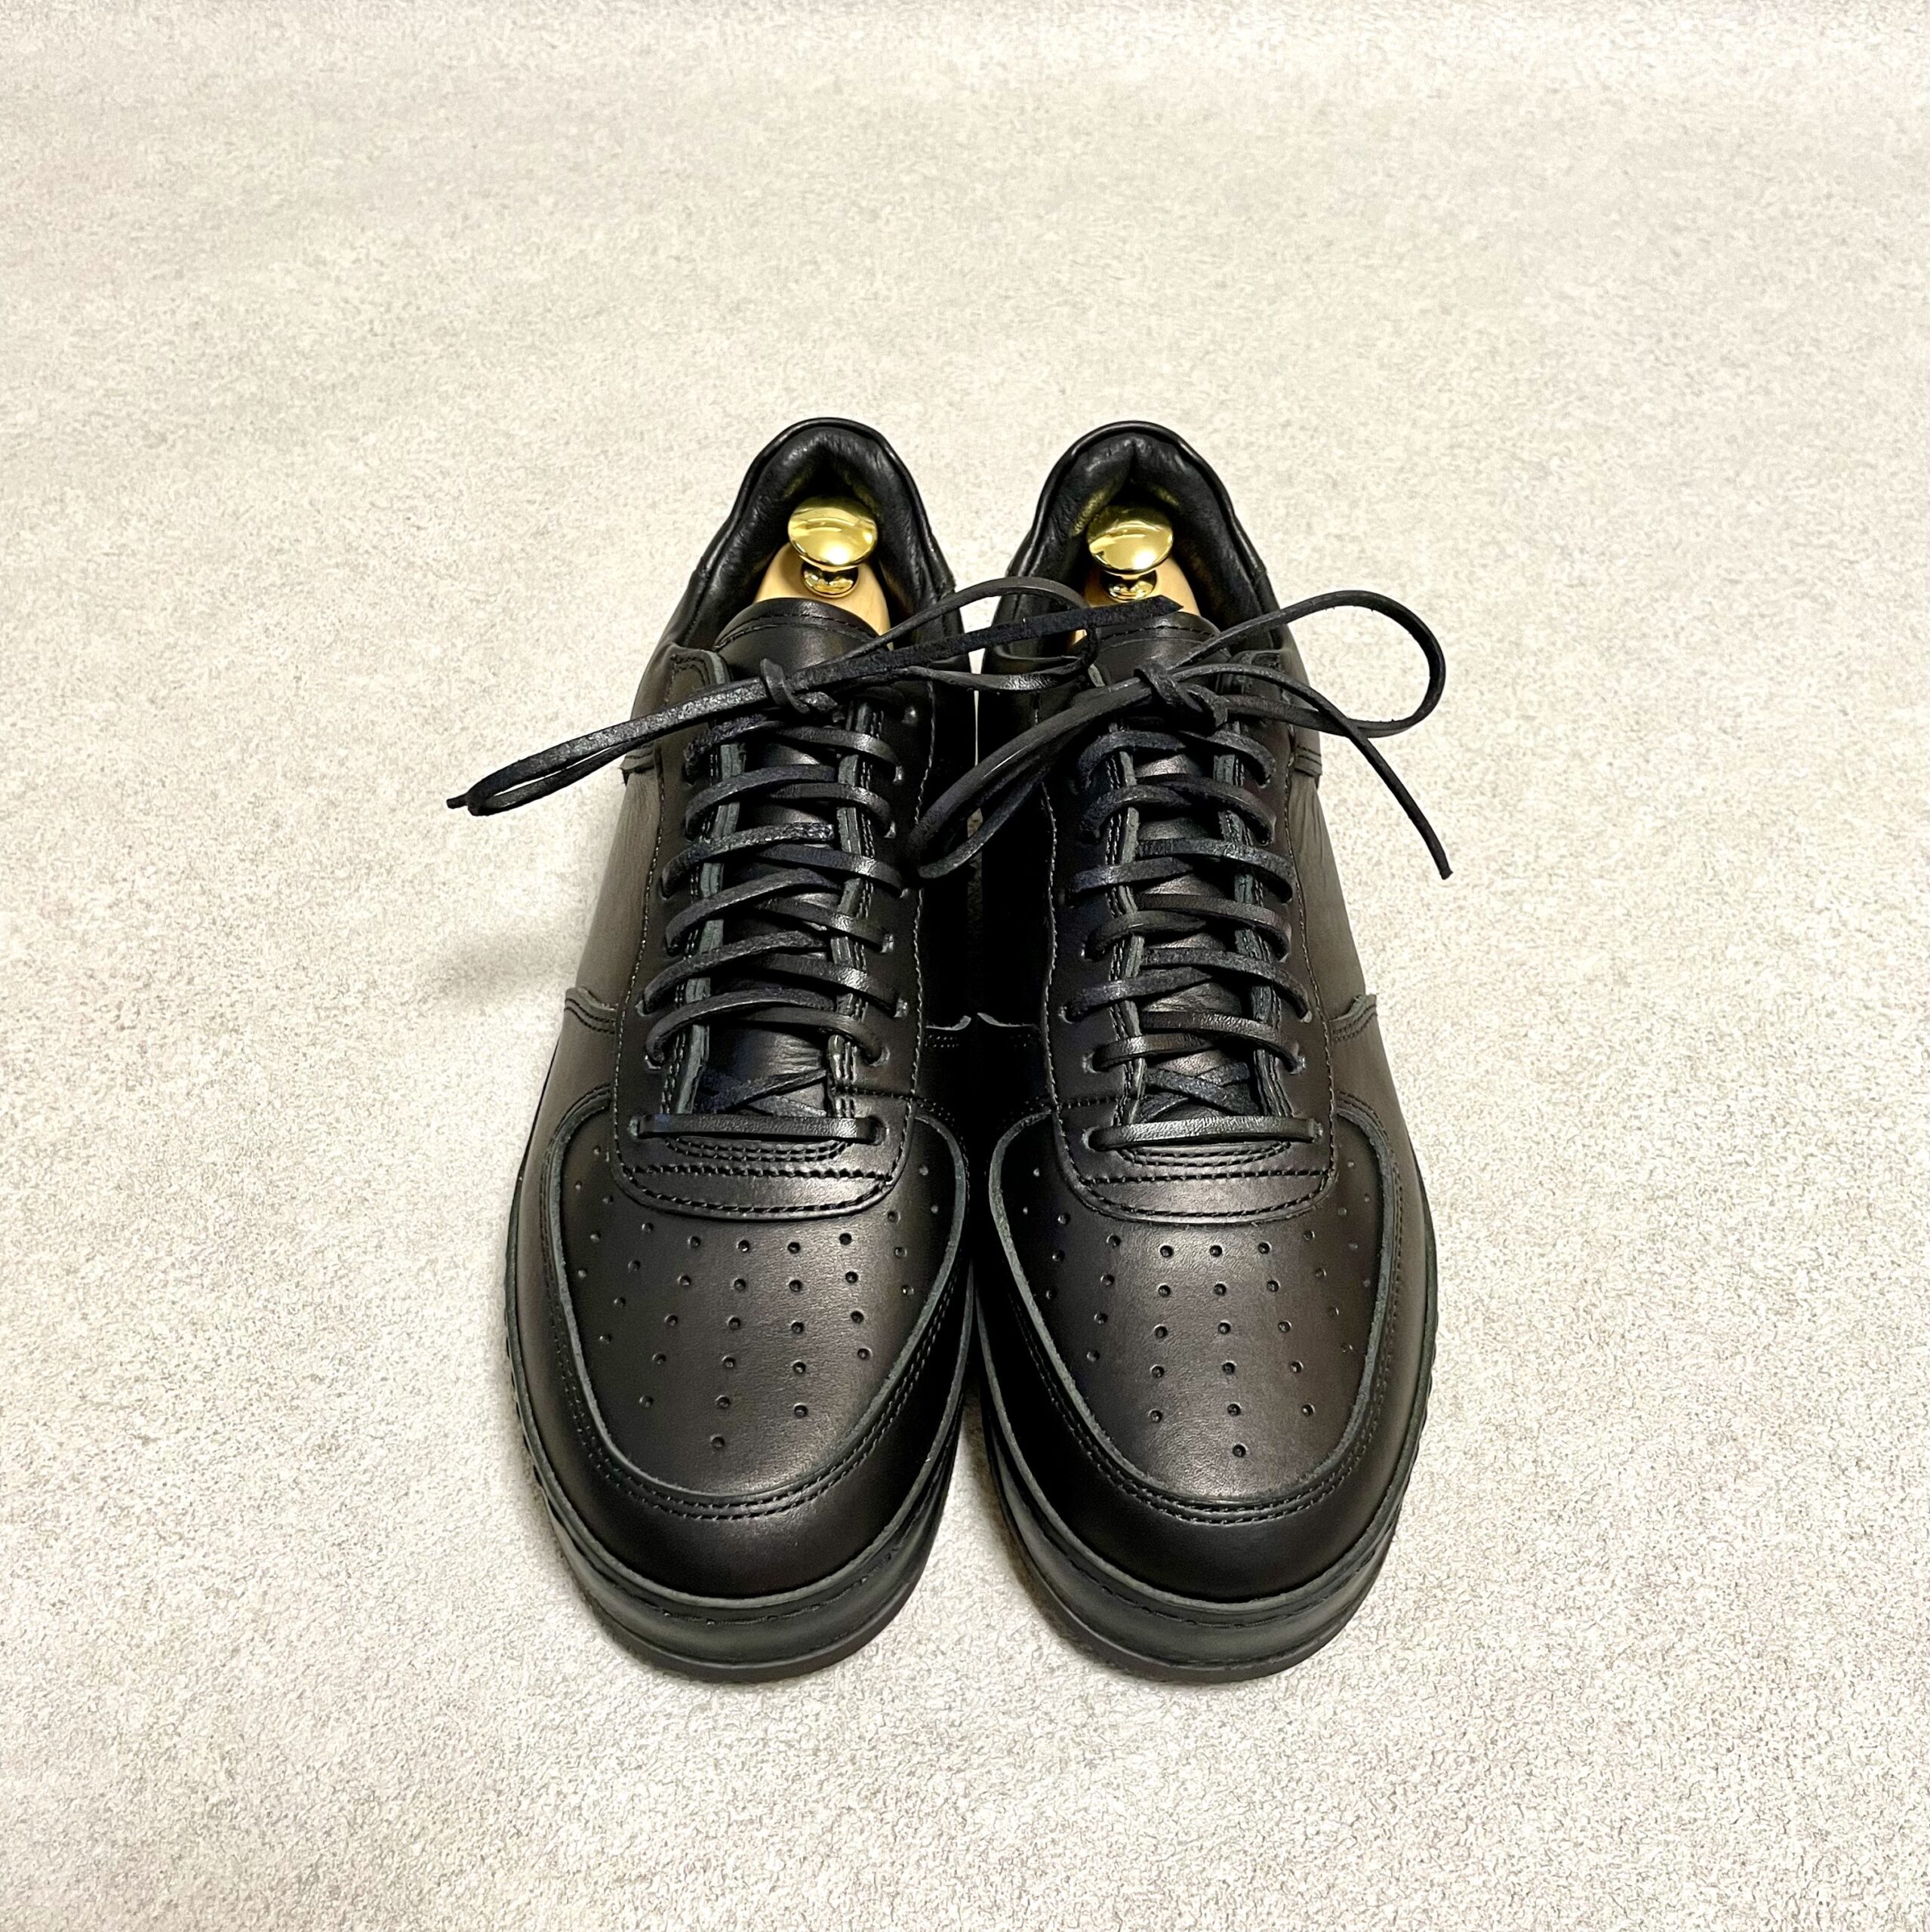 ただの黒い靴ではない。エンダースキーマの「ナイキ・エアフォース１ ...